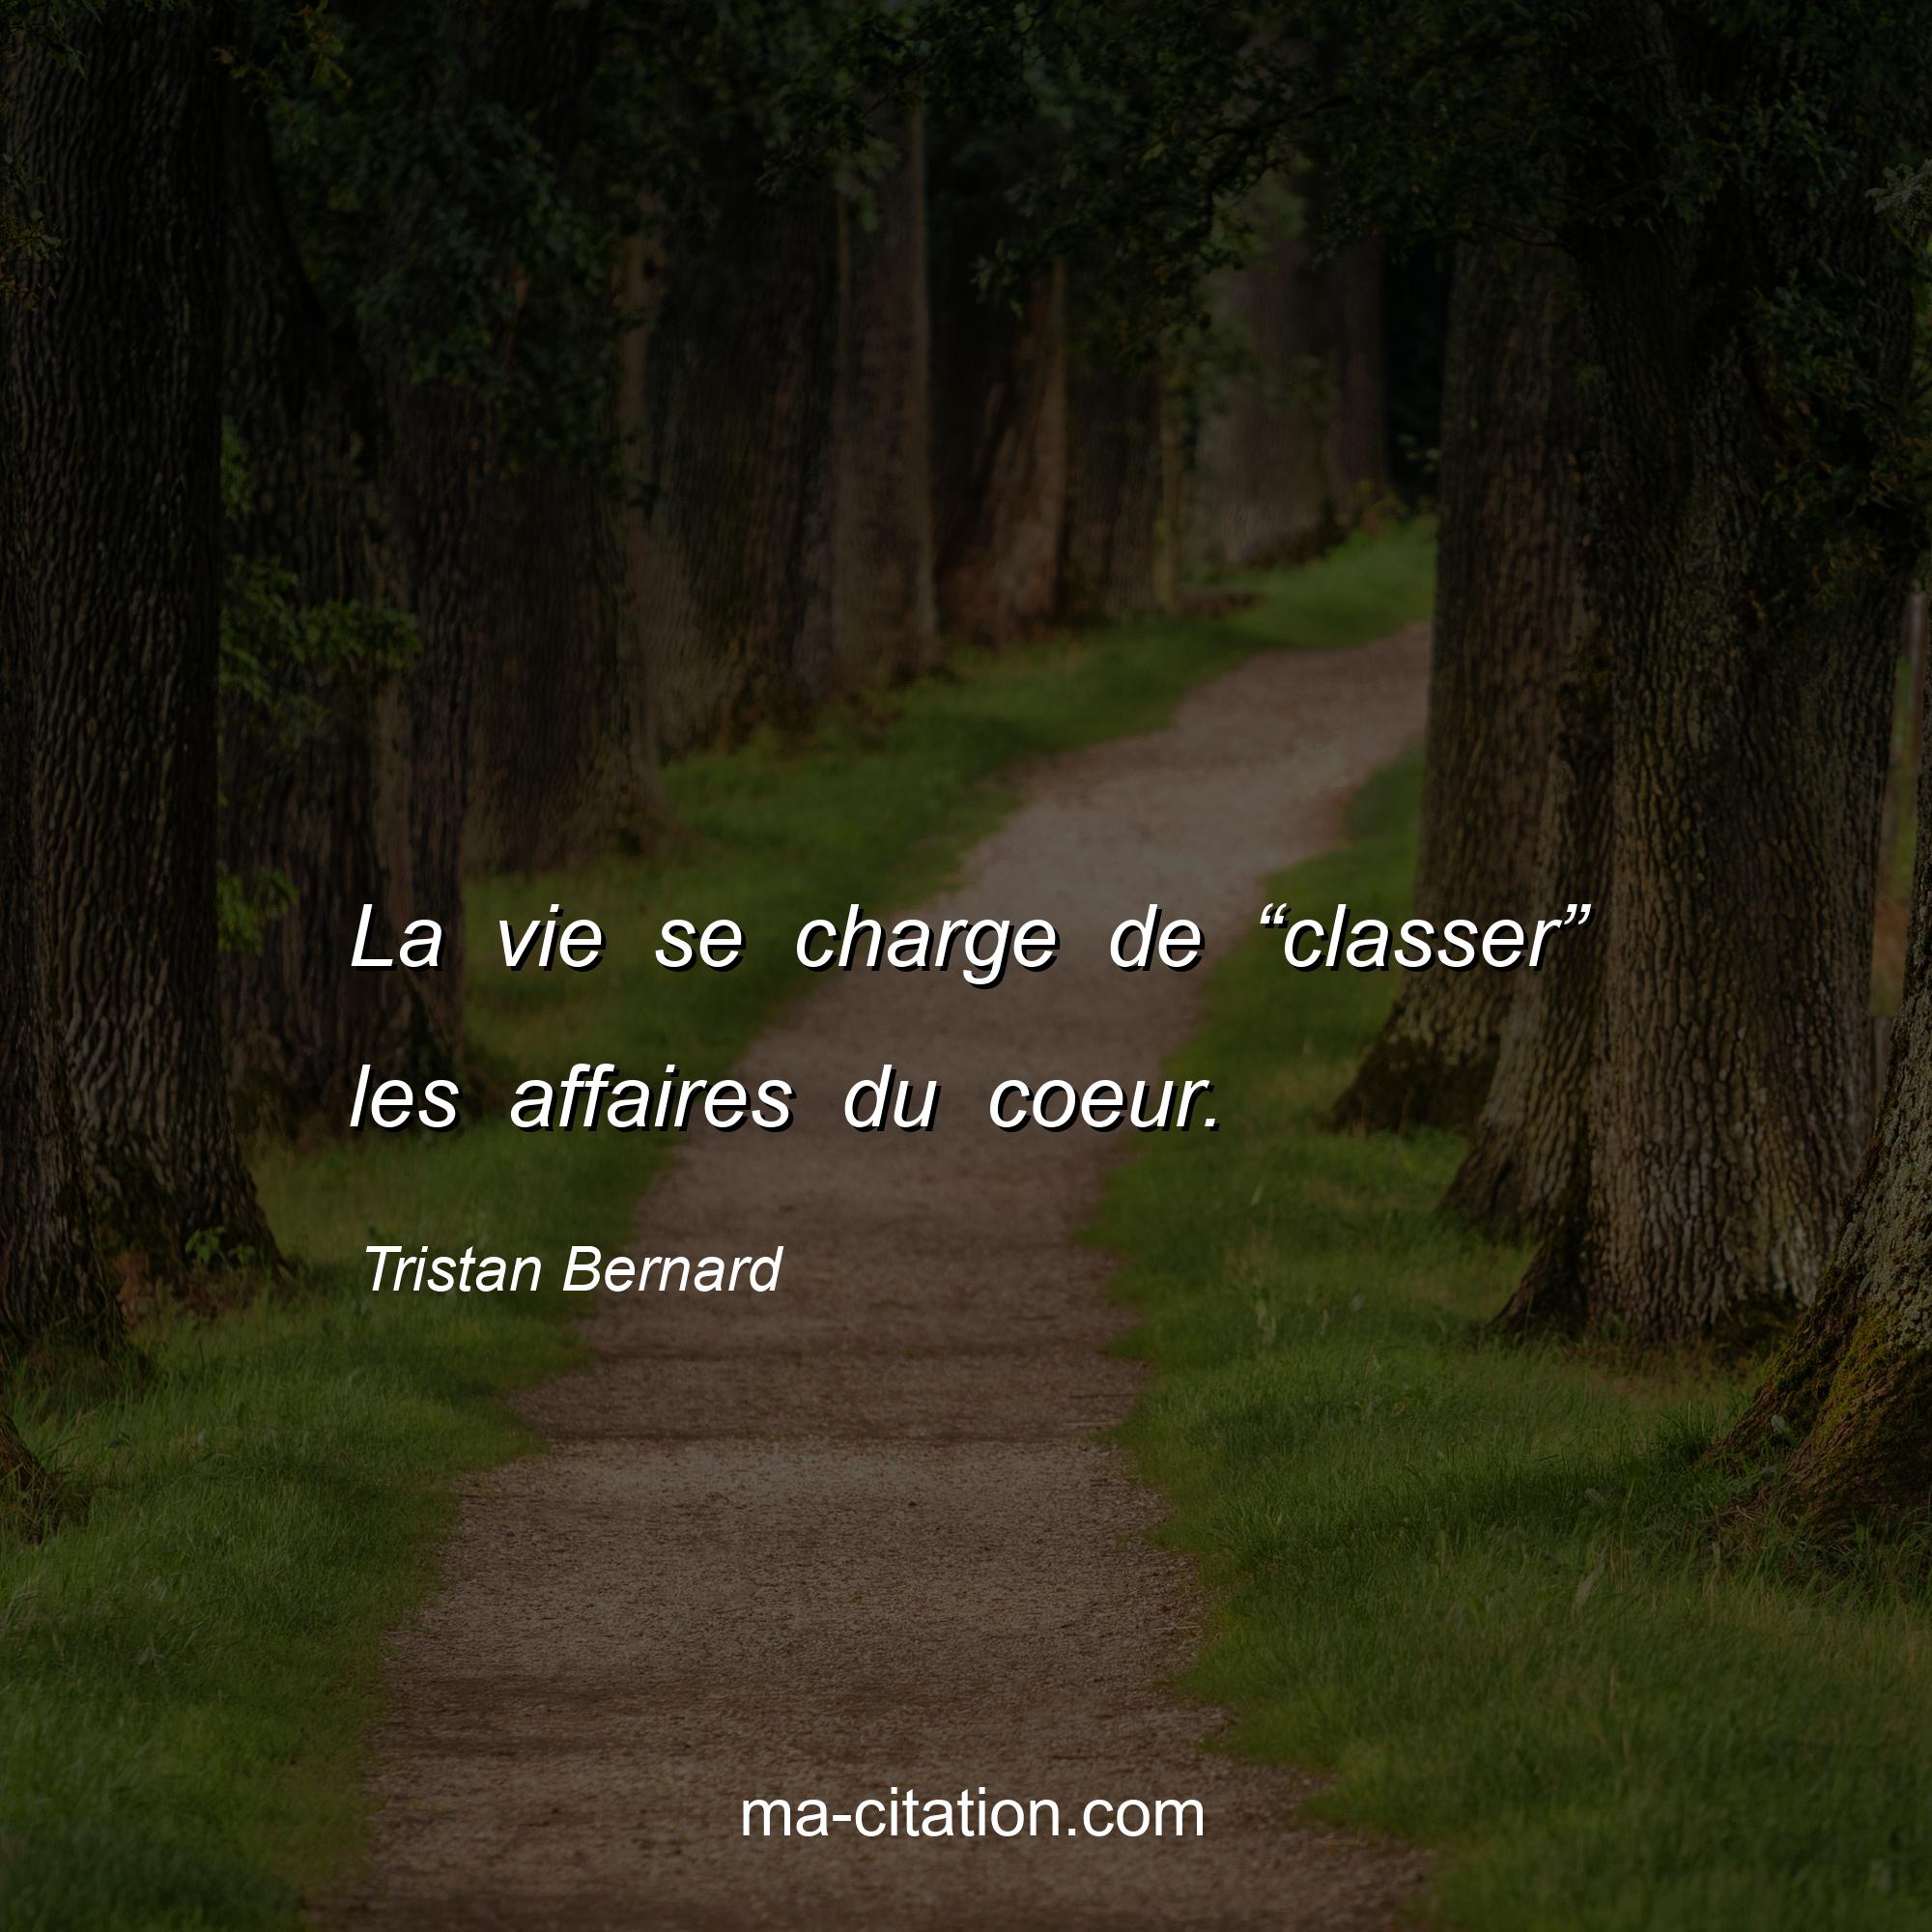 Tristan Bernard : La vie se charge de “classer” les affaires du coeur.